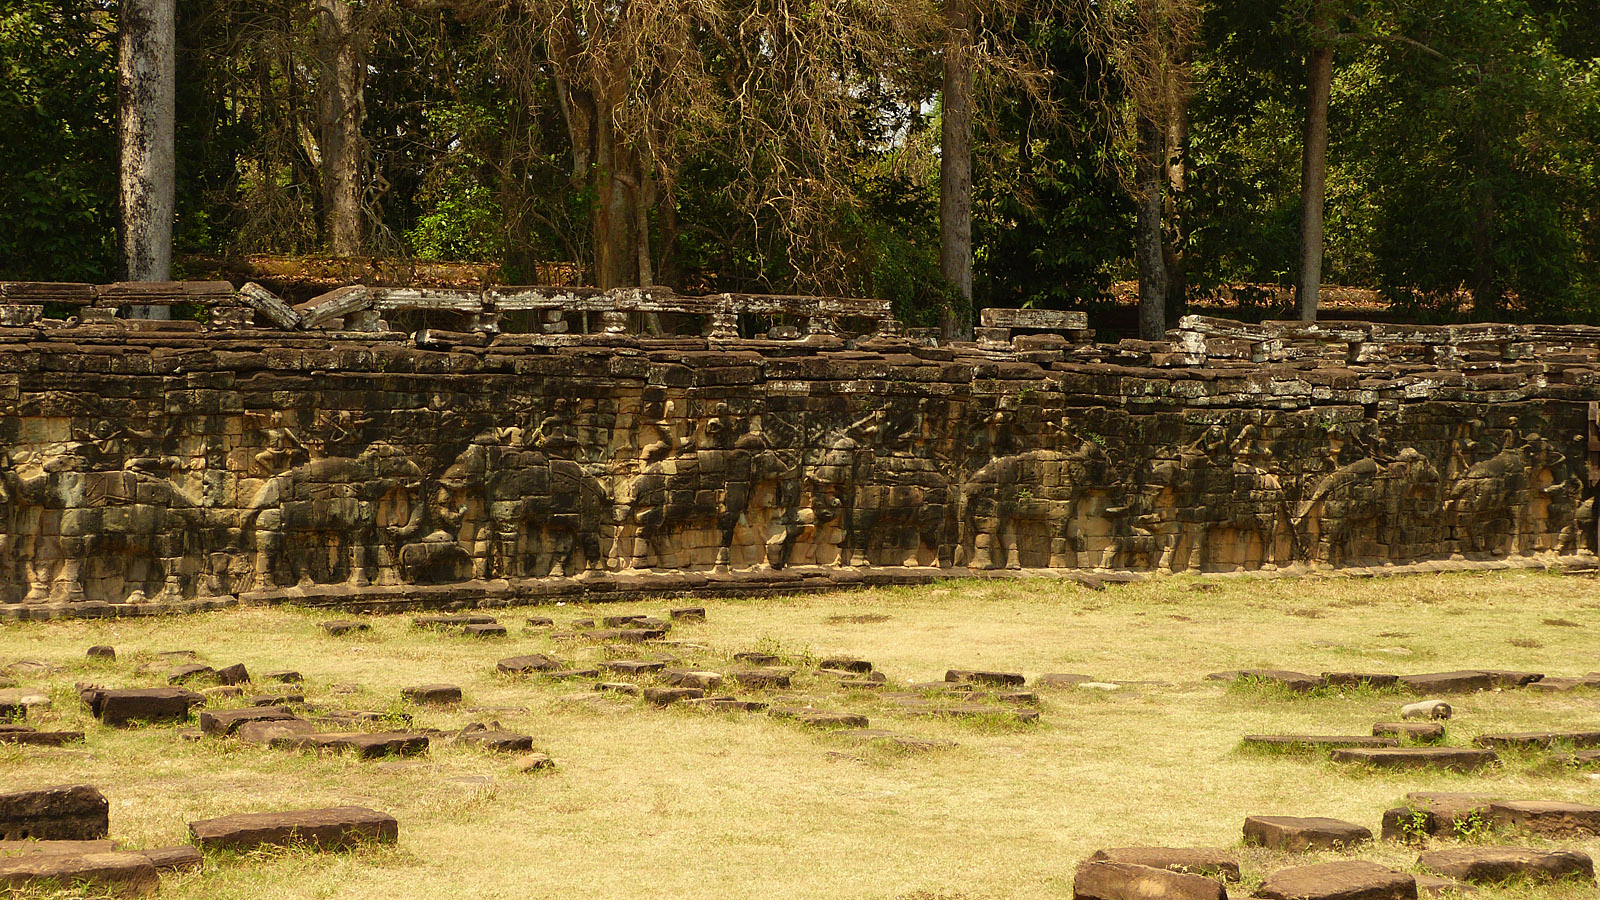 Terrace of the Elephants, Angkor Thom, Cambodia